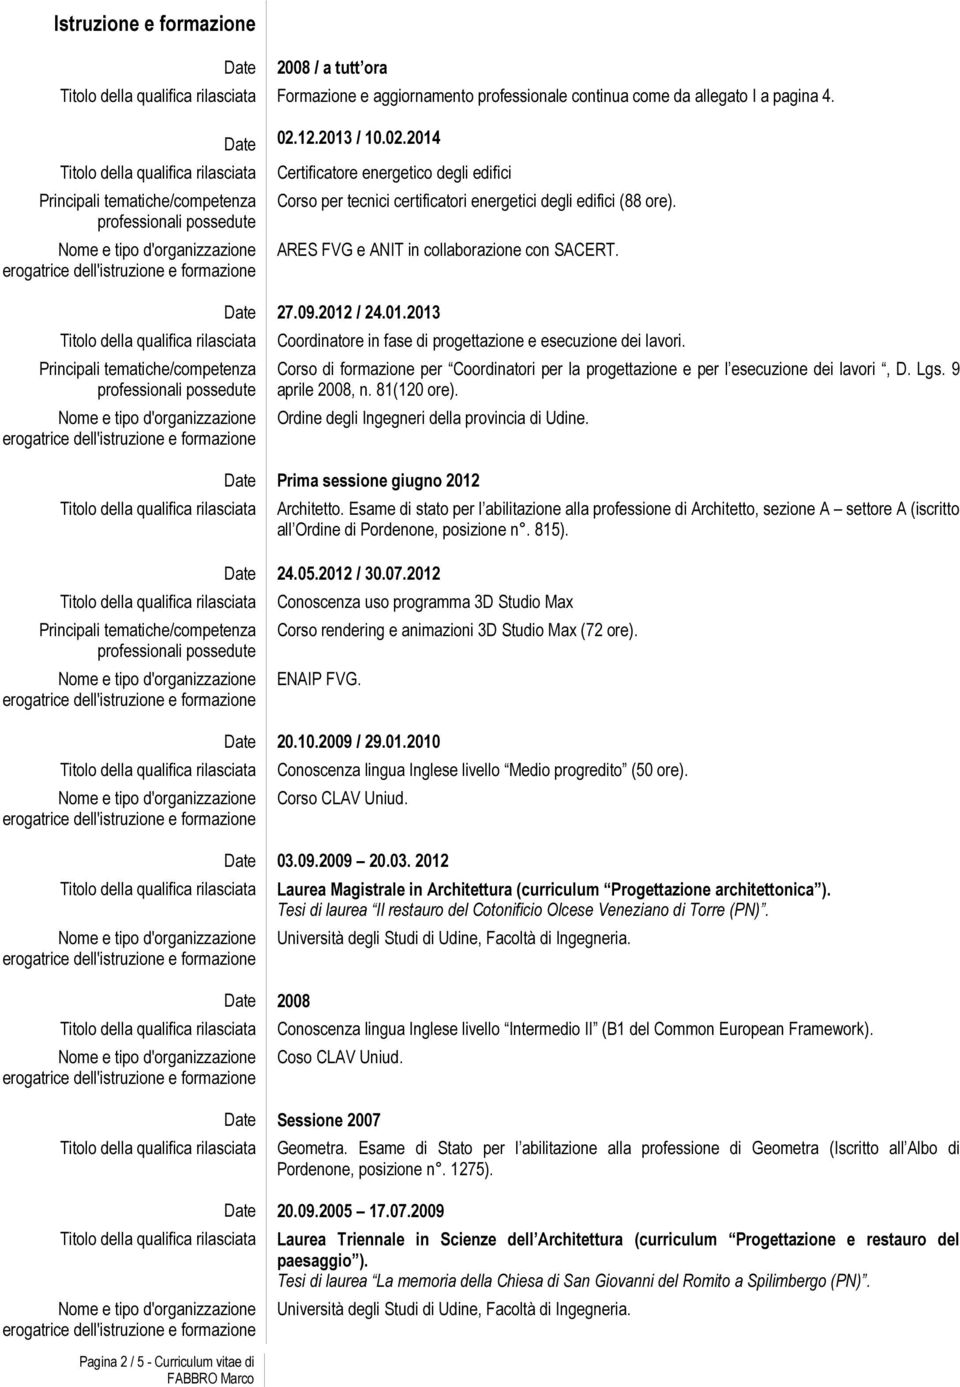 Corso di formazione per Coordinatori per la progettazione e per l esecuzione dei lavori, D. Lgs. 9 aprile 2008, n. 81(120 ore). Ordine degli Ingegneri della provincia di Udine.